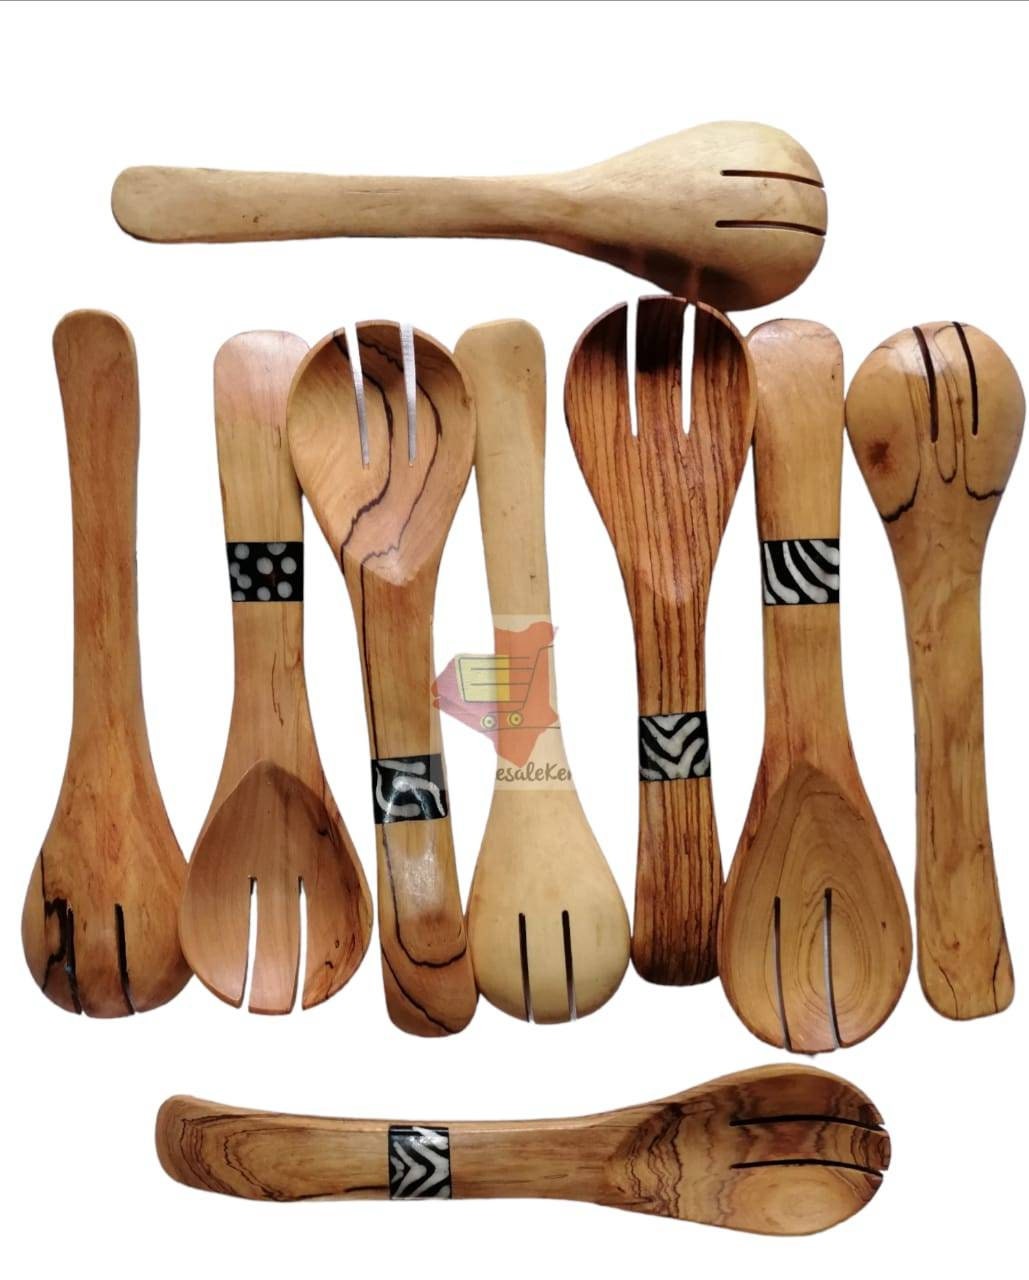 cuillère en bois gros, cuillère d'olivier, de service bois, cuillères cuisine, fourchettes et cuillères, cuisson sculptées à la main,